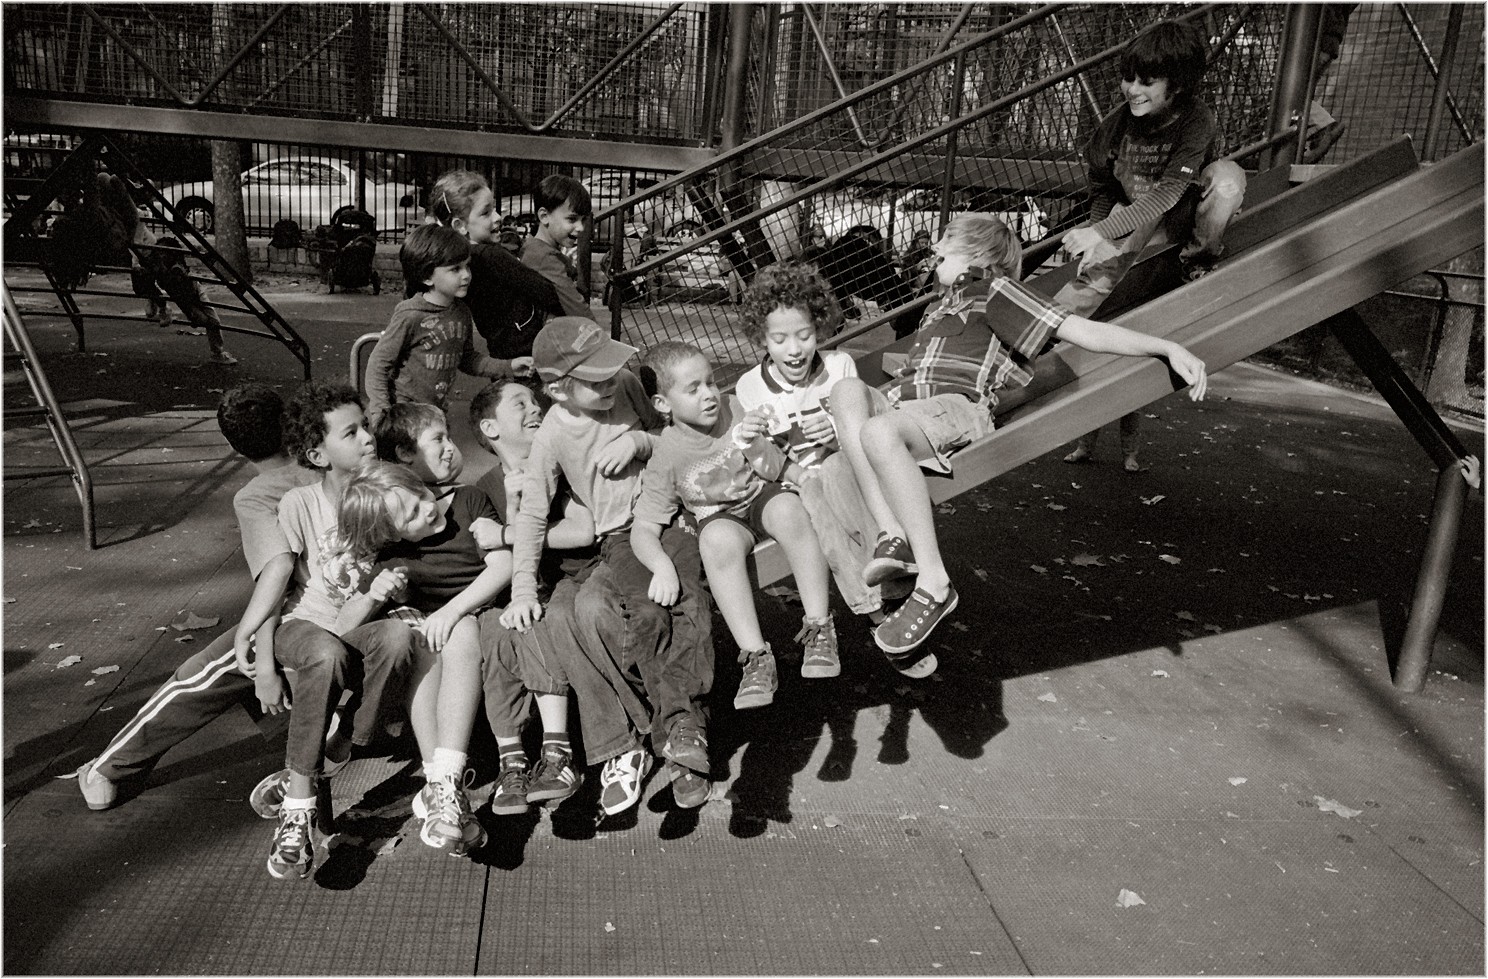 Детская площадка, Нью-Йорк, 2012. Фотограф Мэтт Вебер